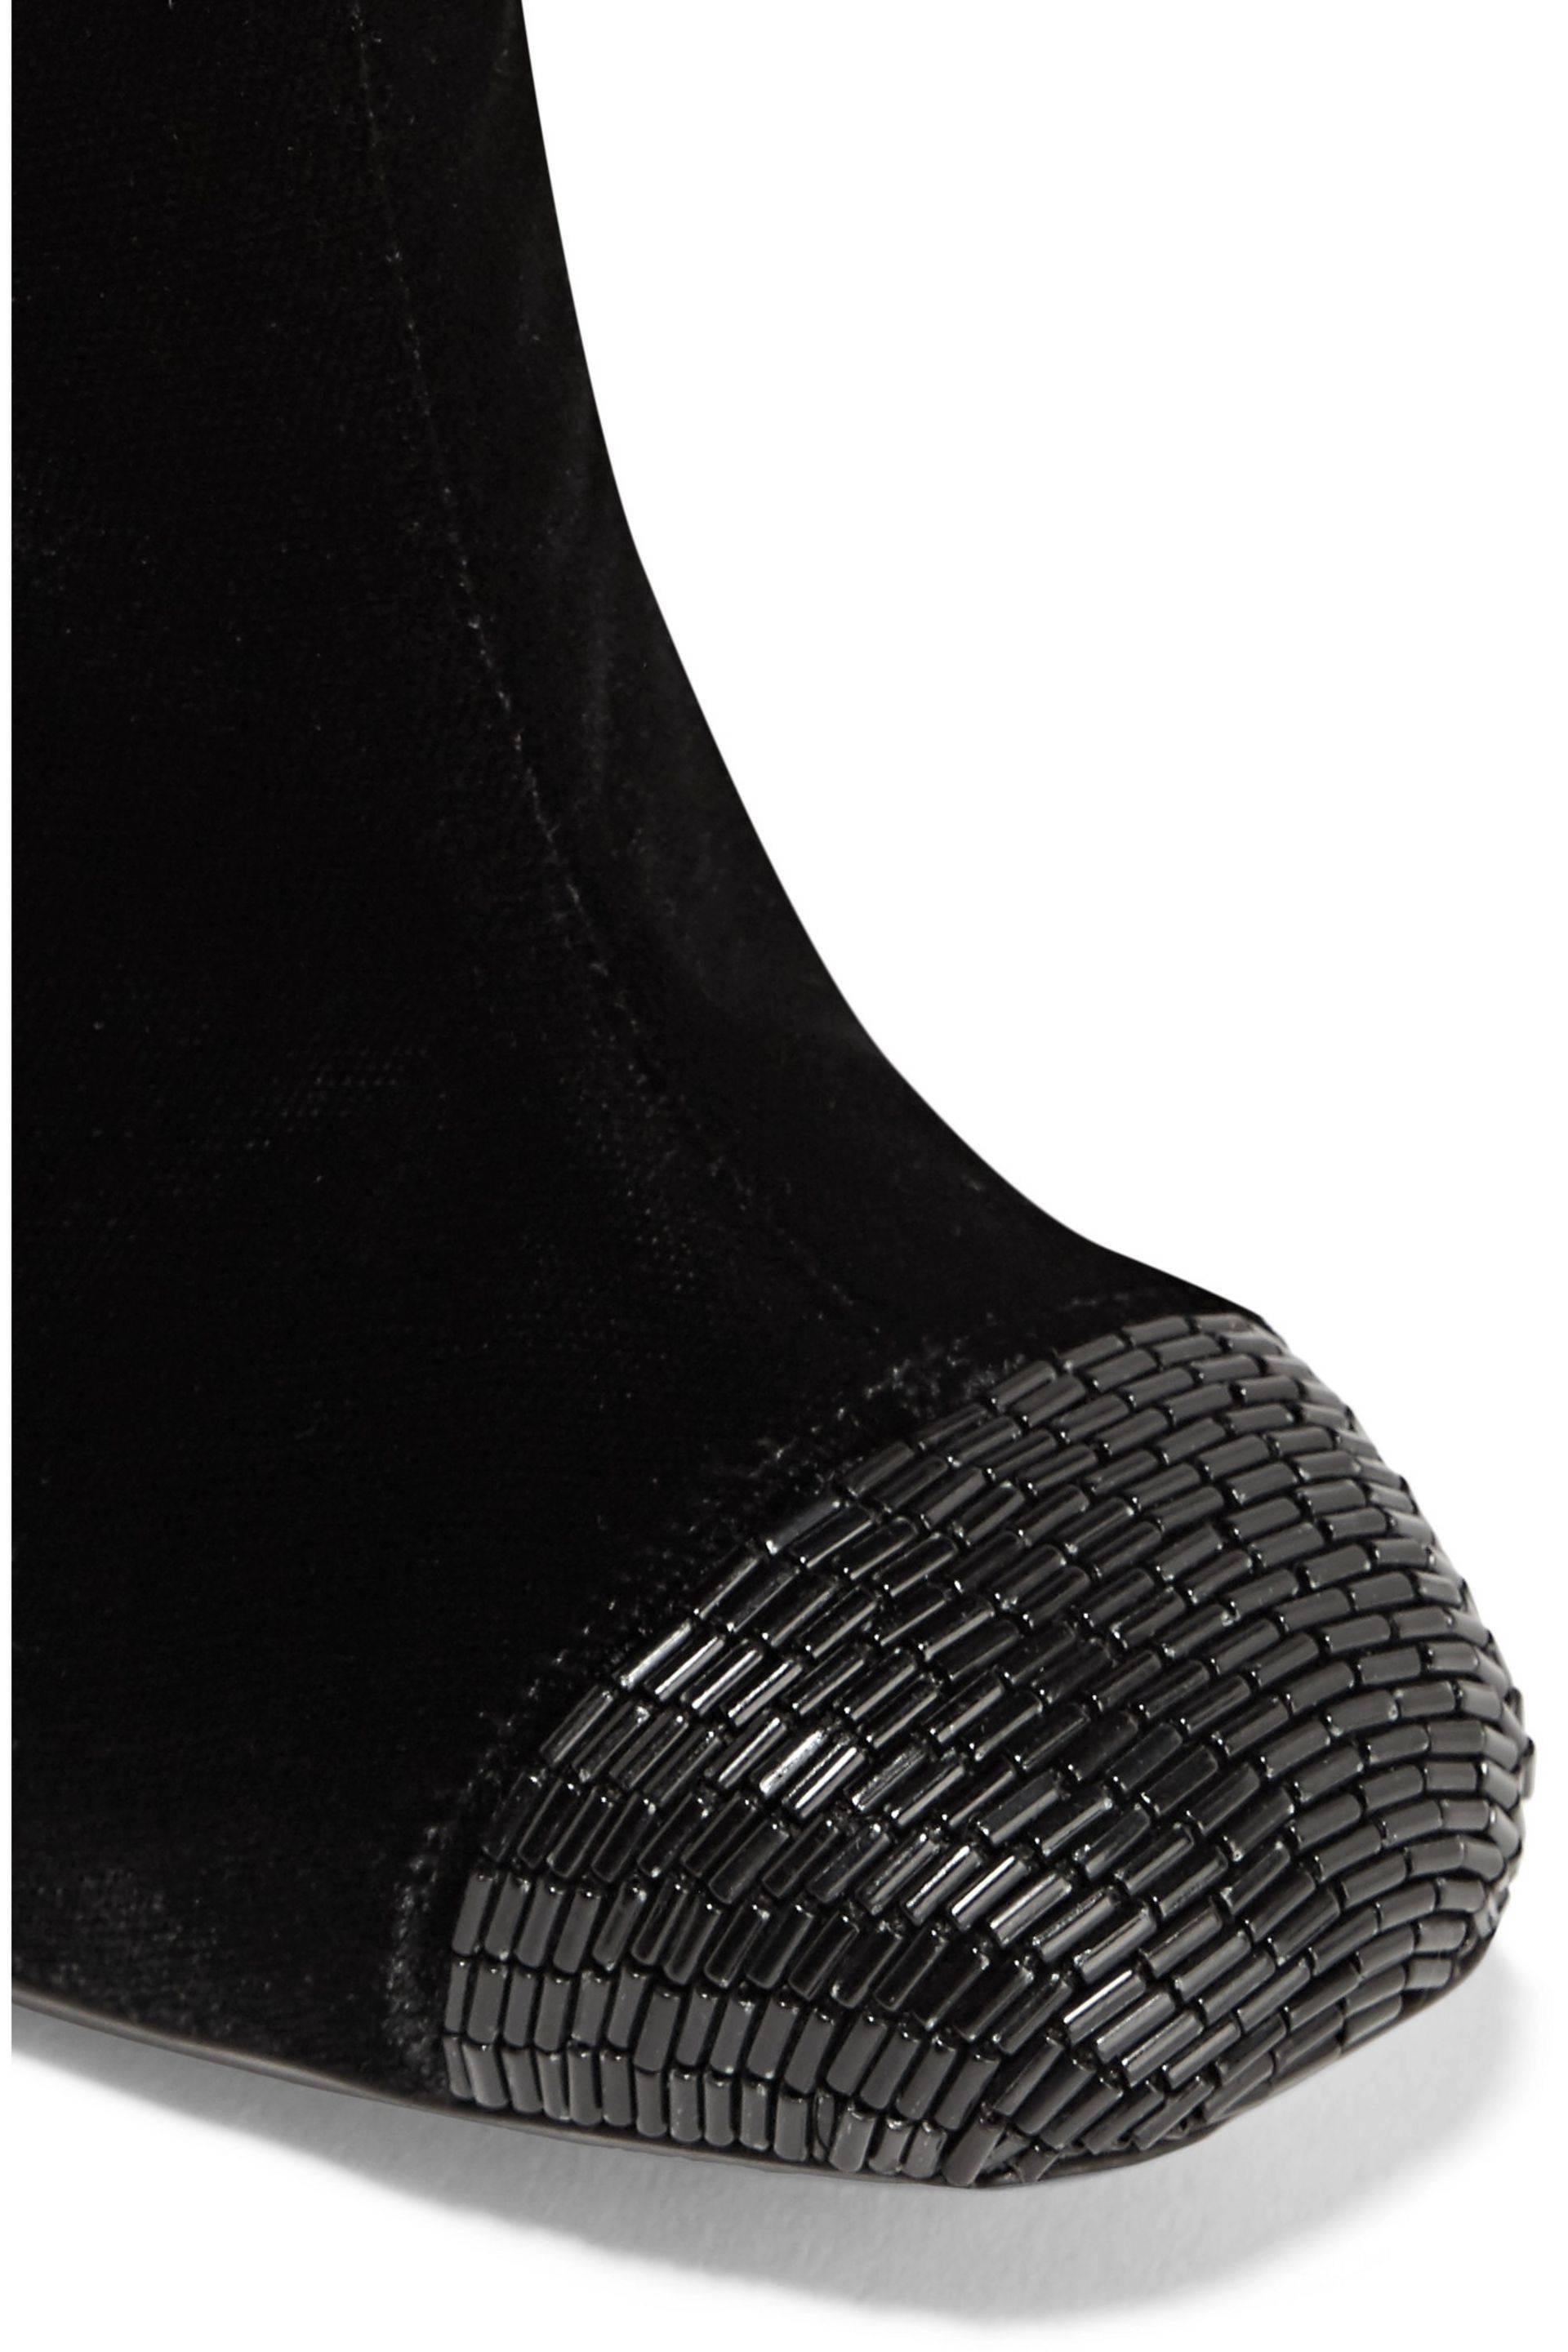 New $2700 Tom Ford Bead-embellished Black Velvet High Heel Boots 39.5 - 9.5 For Sale 1